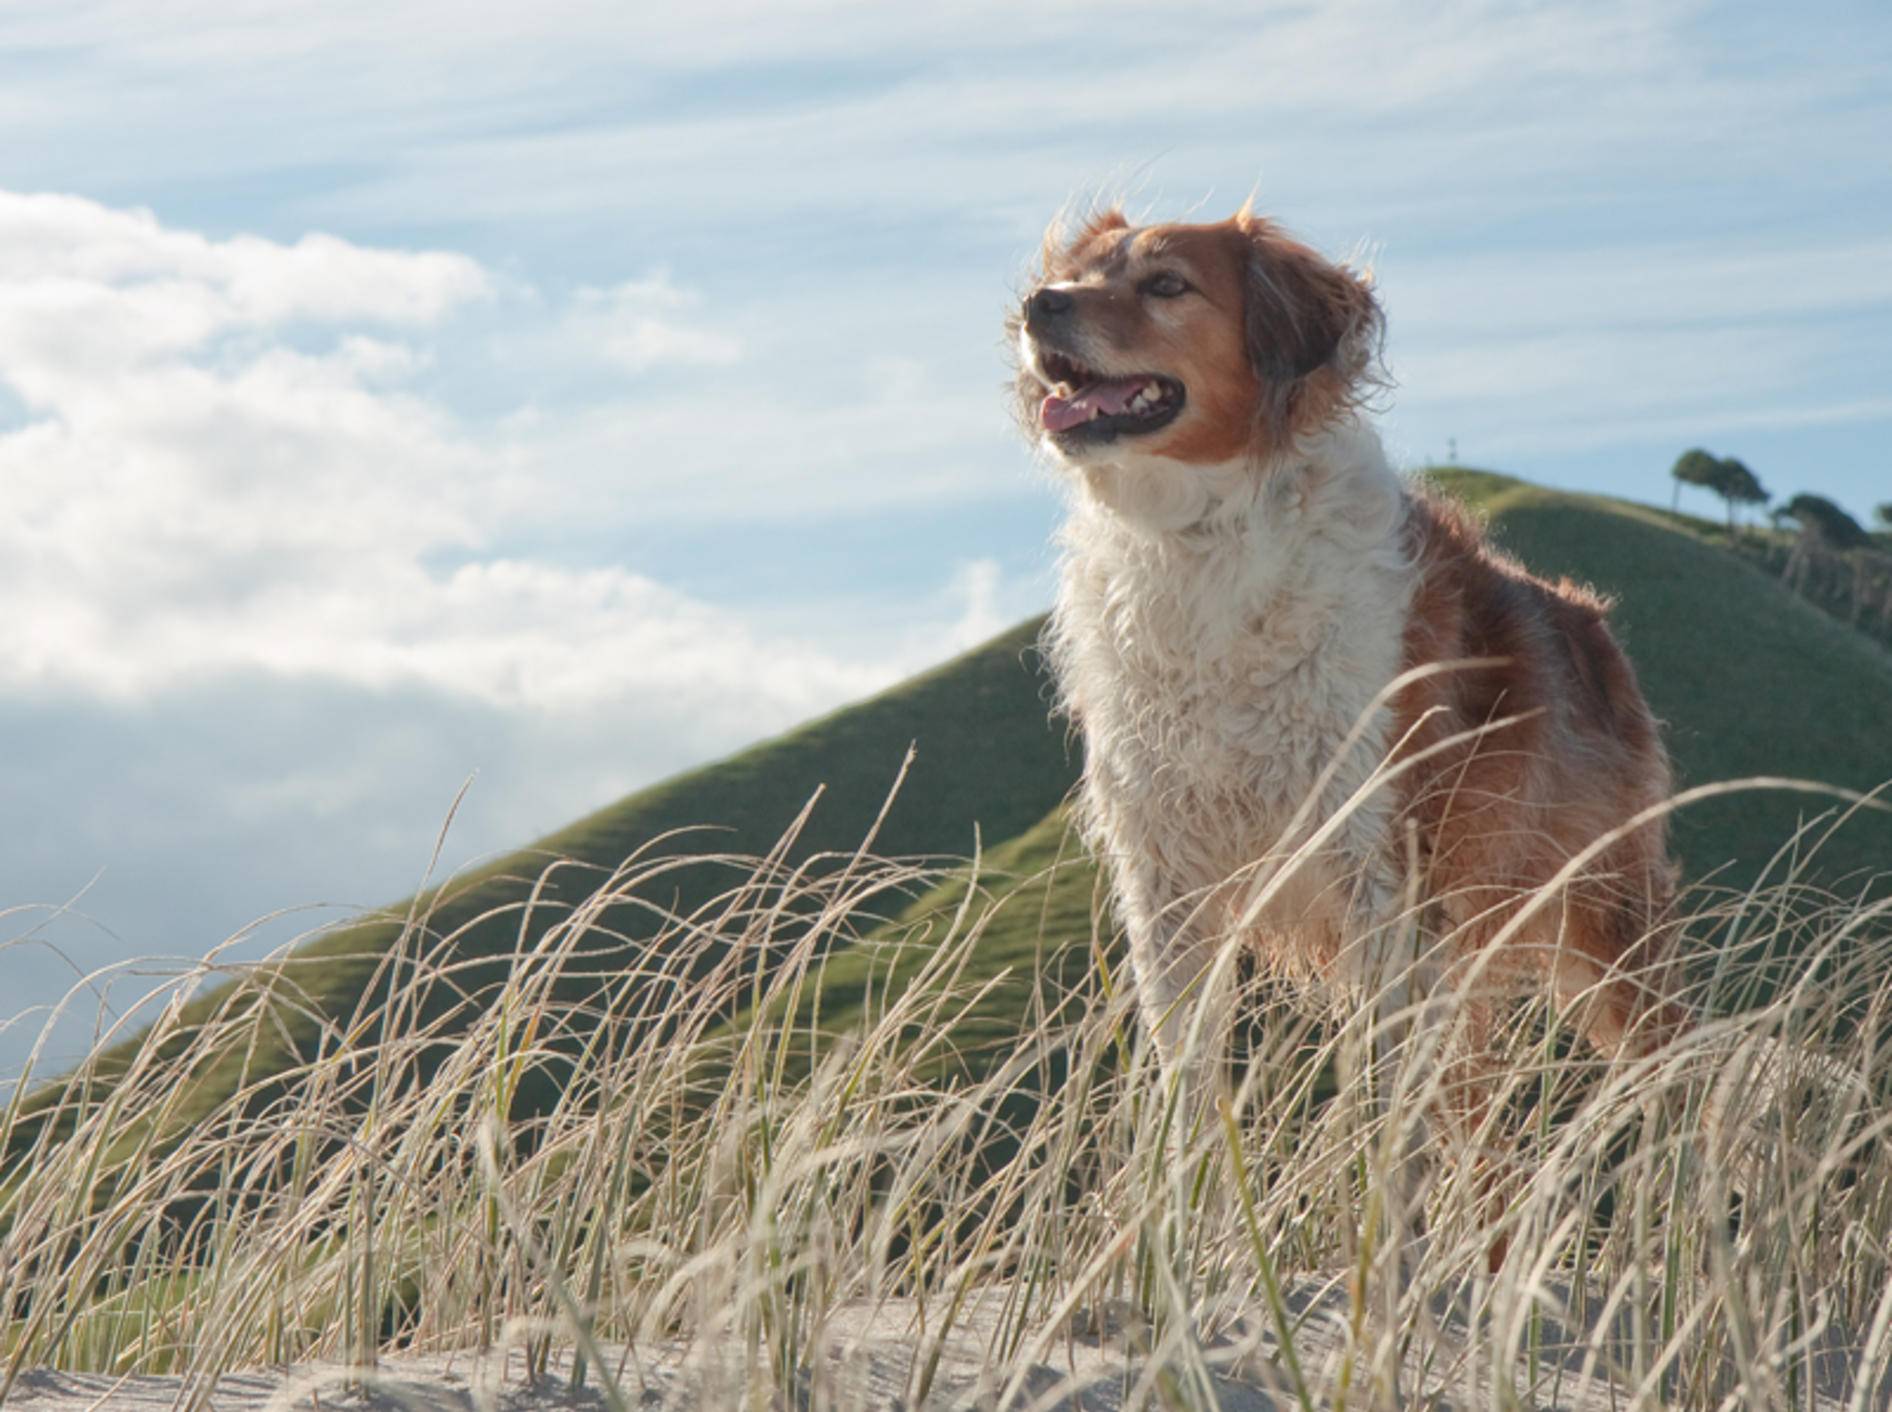 Wer Urlaub mit Hund machen möchte, muss zu den schönsten Zielen gar nicht weit reisen – Bild: Shutterstock / S Curtis